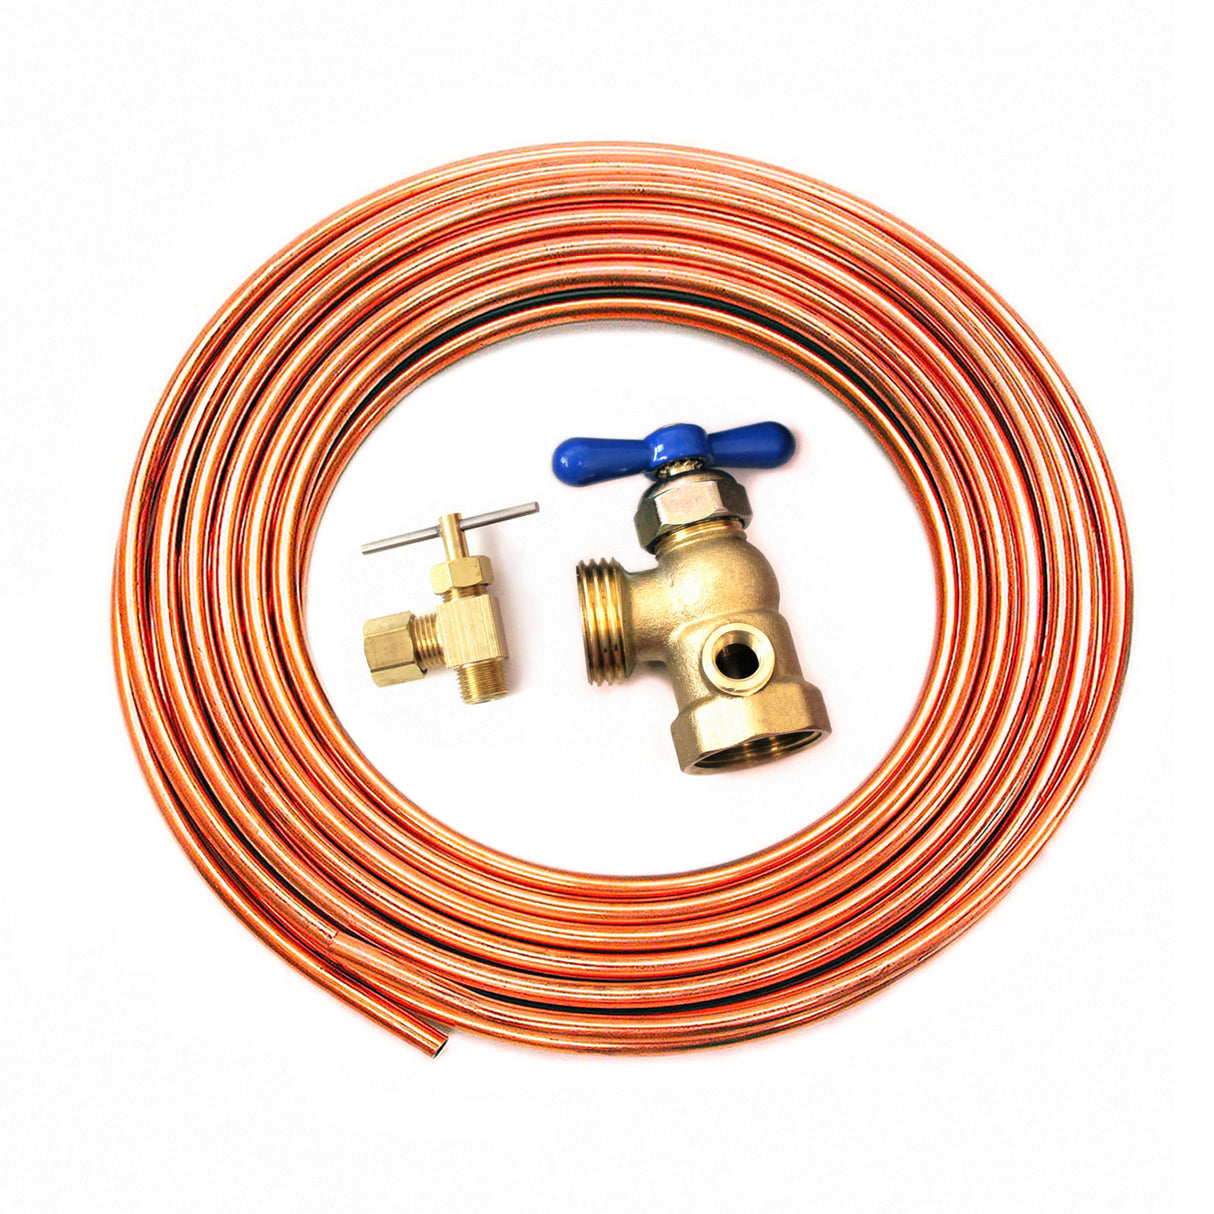 Kit de conexión de agua con dial y tubo de cobre 